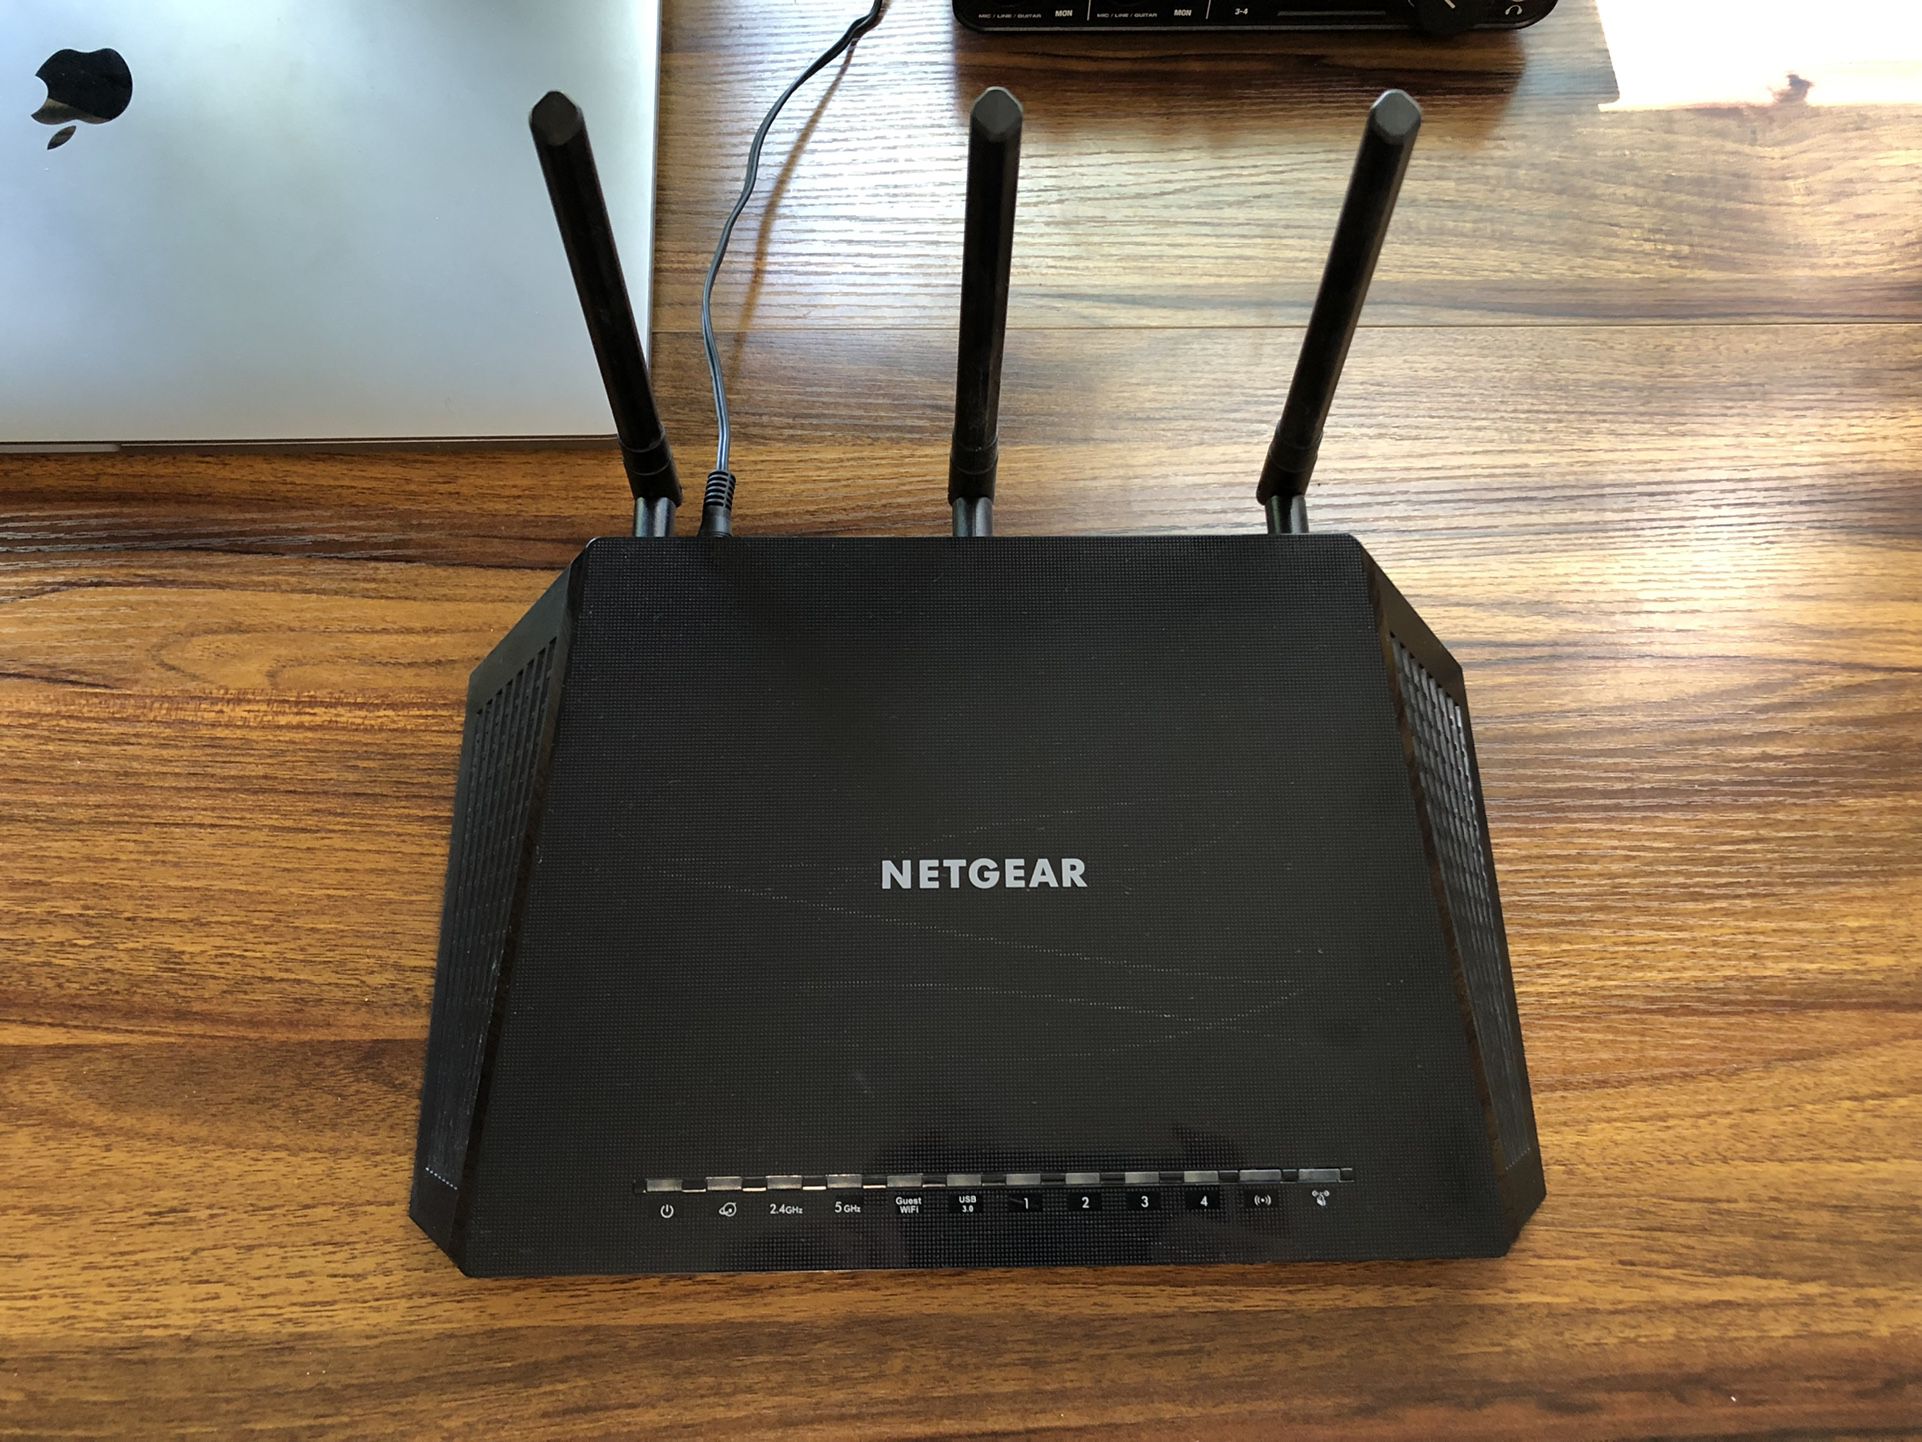 Netgear Nighthawk R6700 WiFi Router